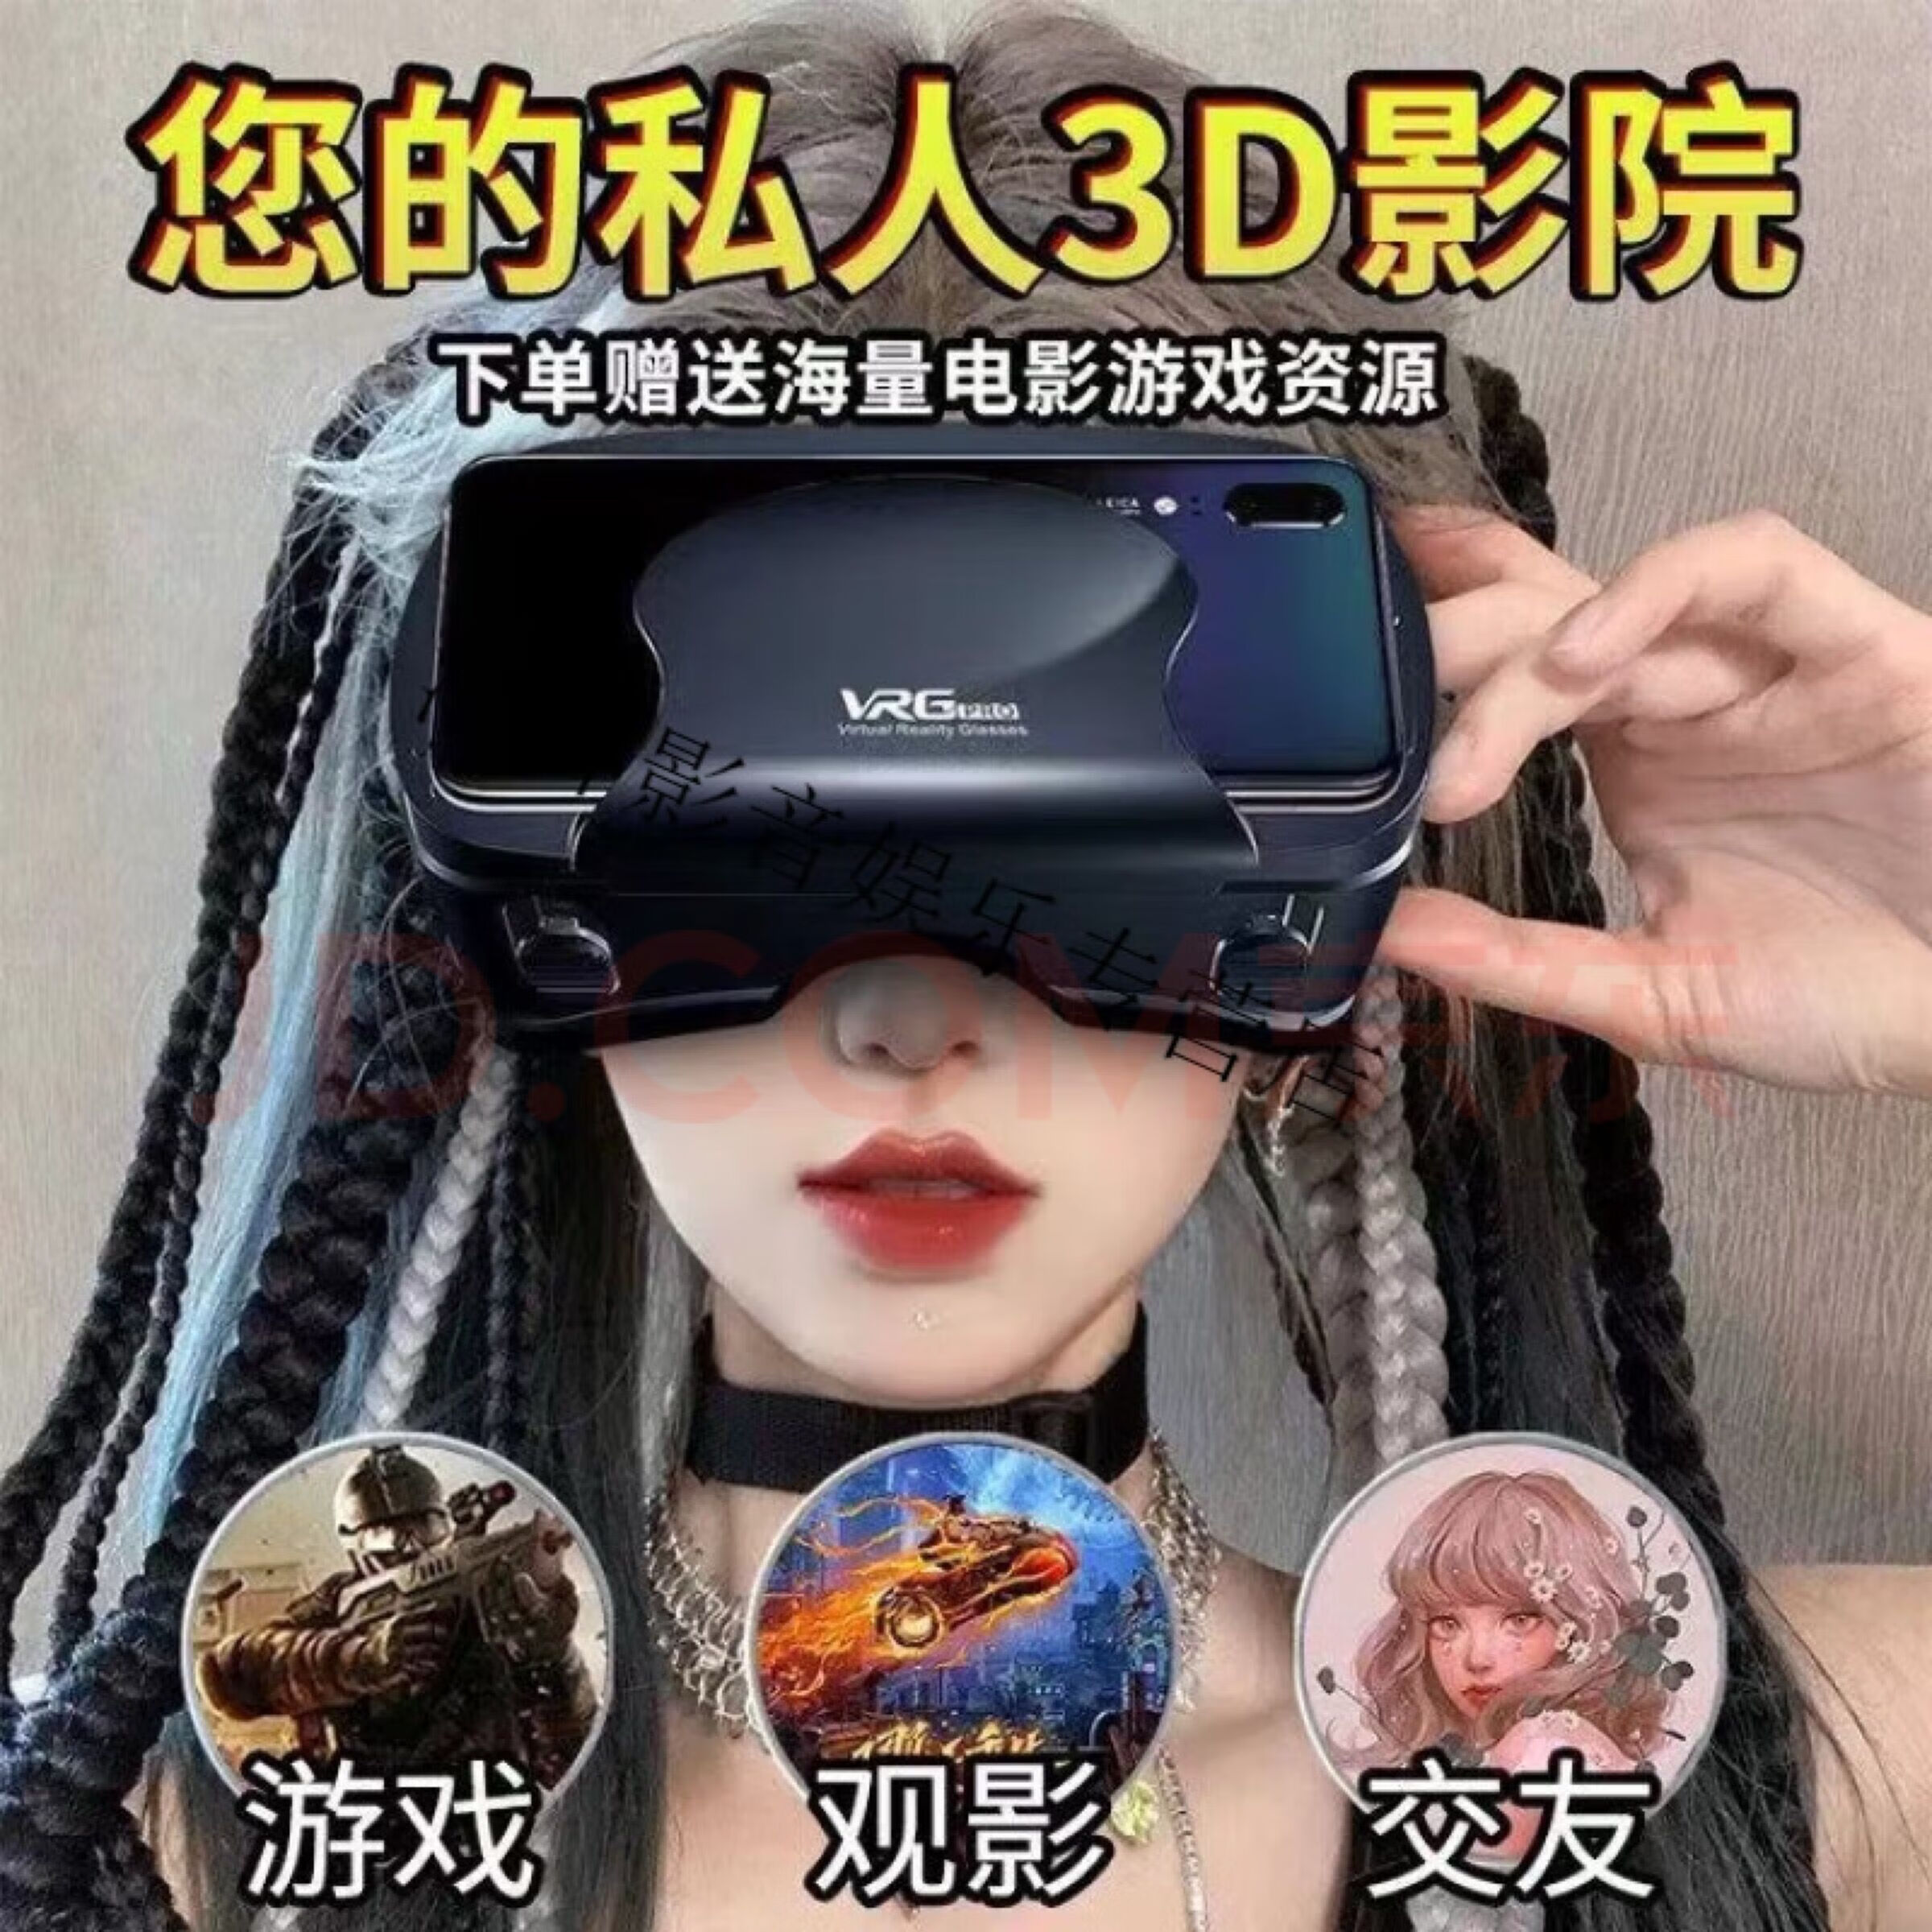 VRPARK新款VR眼镜一体机虚拟现实3d体感用品超清全景4K私人ar影院适用iPhone 安卓鸿蒙OPVO手机 超清蓝光版+遥控手柄+耳机